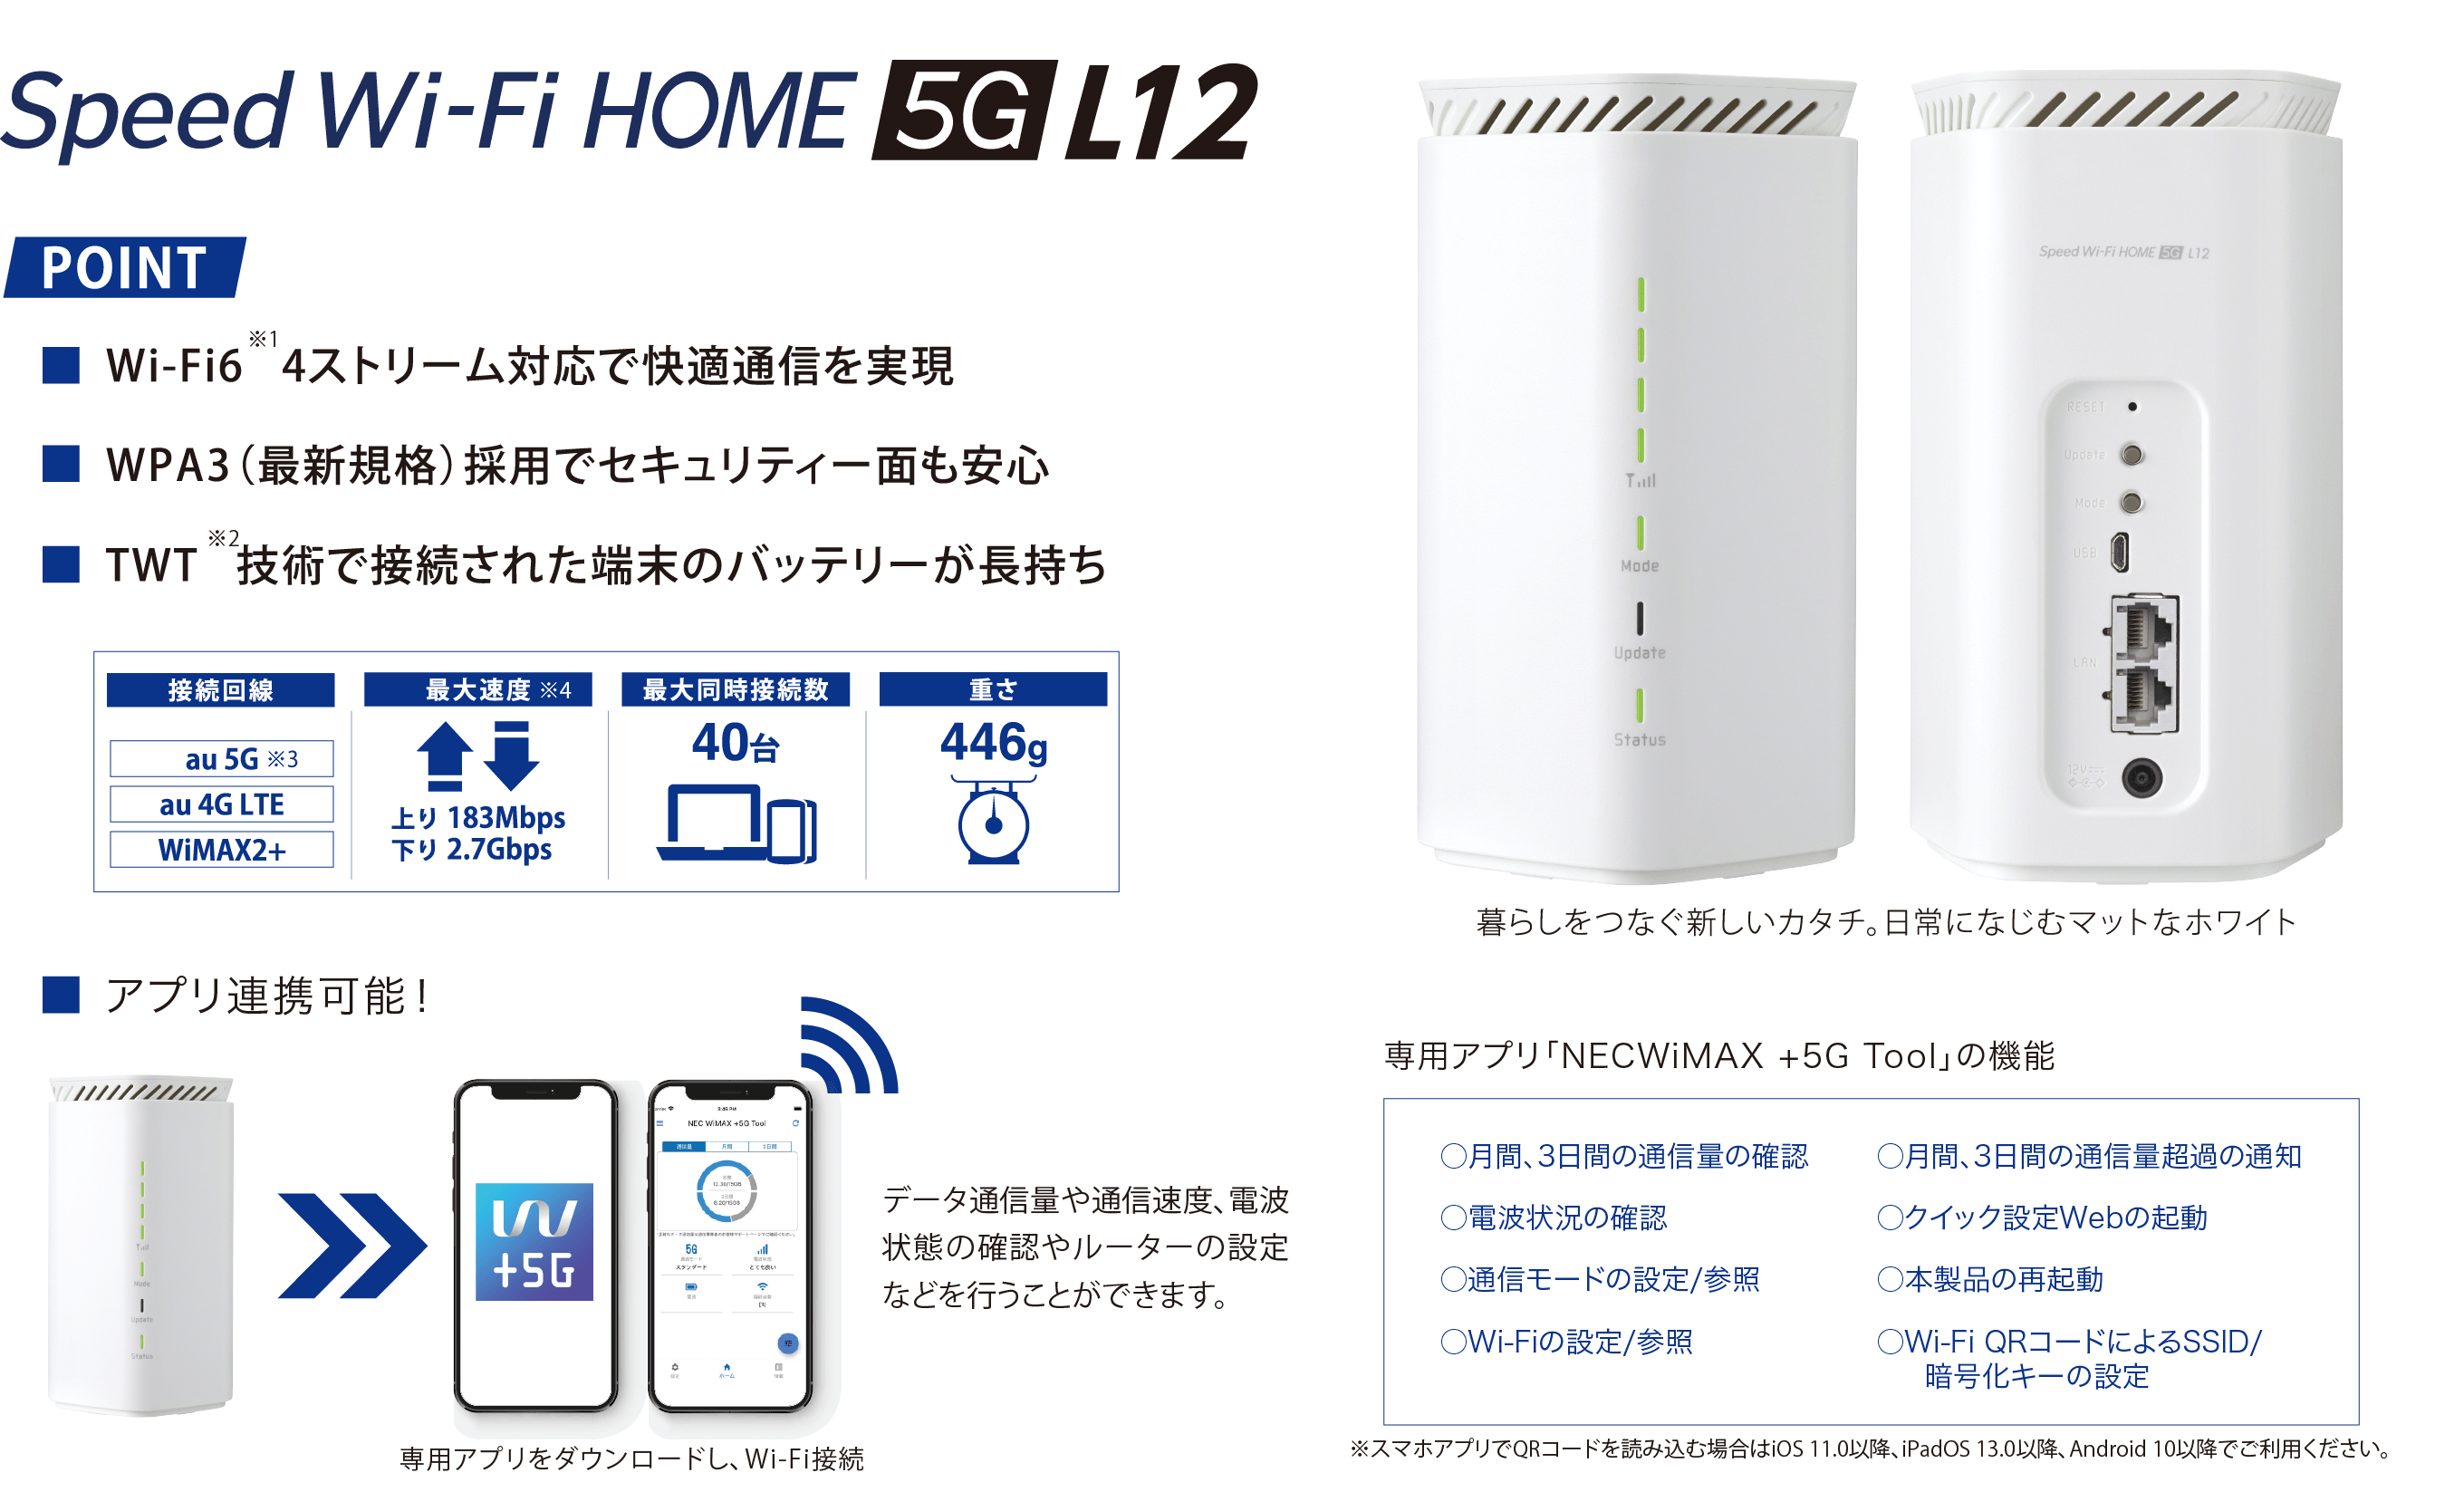 
          Speed Wi-Fi HOME 5G L12。
          ポイント：
          ・Wi-Fi6※1、4ストリーム対応で快適通信を実現
          ・WPA3（最新規格）採用でセキュリティー面も安心
          ・TWT※2、技術で接続された端末のバッテリーが長持ち

          接続回線：au 5G※3、au 4G LTE、WiMAX2+。
          最大速度※4：上り183Mbps、下り2.7Gbps。
          最大同時接続数：40台。
          重さ：446グラム。

          エックスワイマックス端末の画像が表示されています。
          暮らしをつなぐ新しいカタチ。日常になじむマットなホワイト。

          ・アプリ連携可能！
          エックスワイマックス端末とスマートフォンの専用アプリの画像が表示されています。
          データ通信量や通信速度、電波状態の確認やルーターの設定などを行うことができます。
          専用アプリをダウンロードし、Wi-Fi接続。

          専用アプリ「ネックワイマックス+5Gツール」の機能：
          ・月間、3日間の通信量を確認　・月間、3日間の通信量超過の通知
          ・電波状態の確認　・クイック設定Webの起動
          ・通信モードの設定／参照　・本製品の再起動
          ・Wi-Fiの設定／参照　・Wi-Fi QRコードによるSSID／暗号化キーの設定
          ※スマホアプリでQRコードを読み込む場合はiOS 11.0以降、iPadOS 13.0以降、Android 10以降でご利用ください。
        